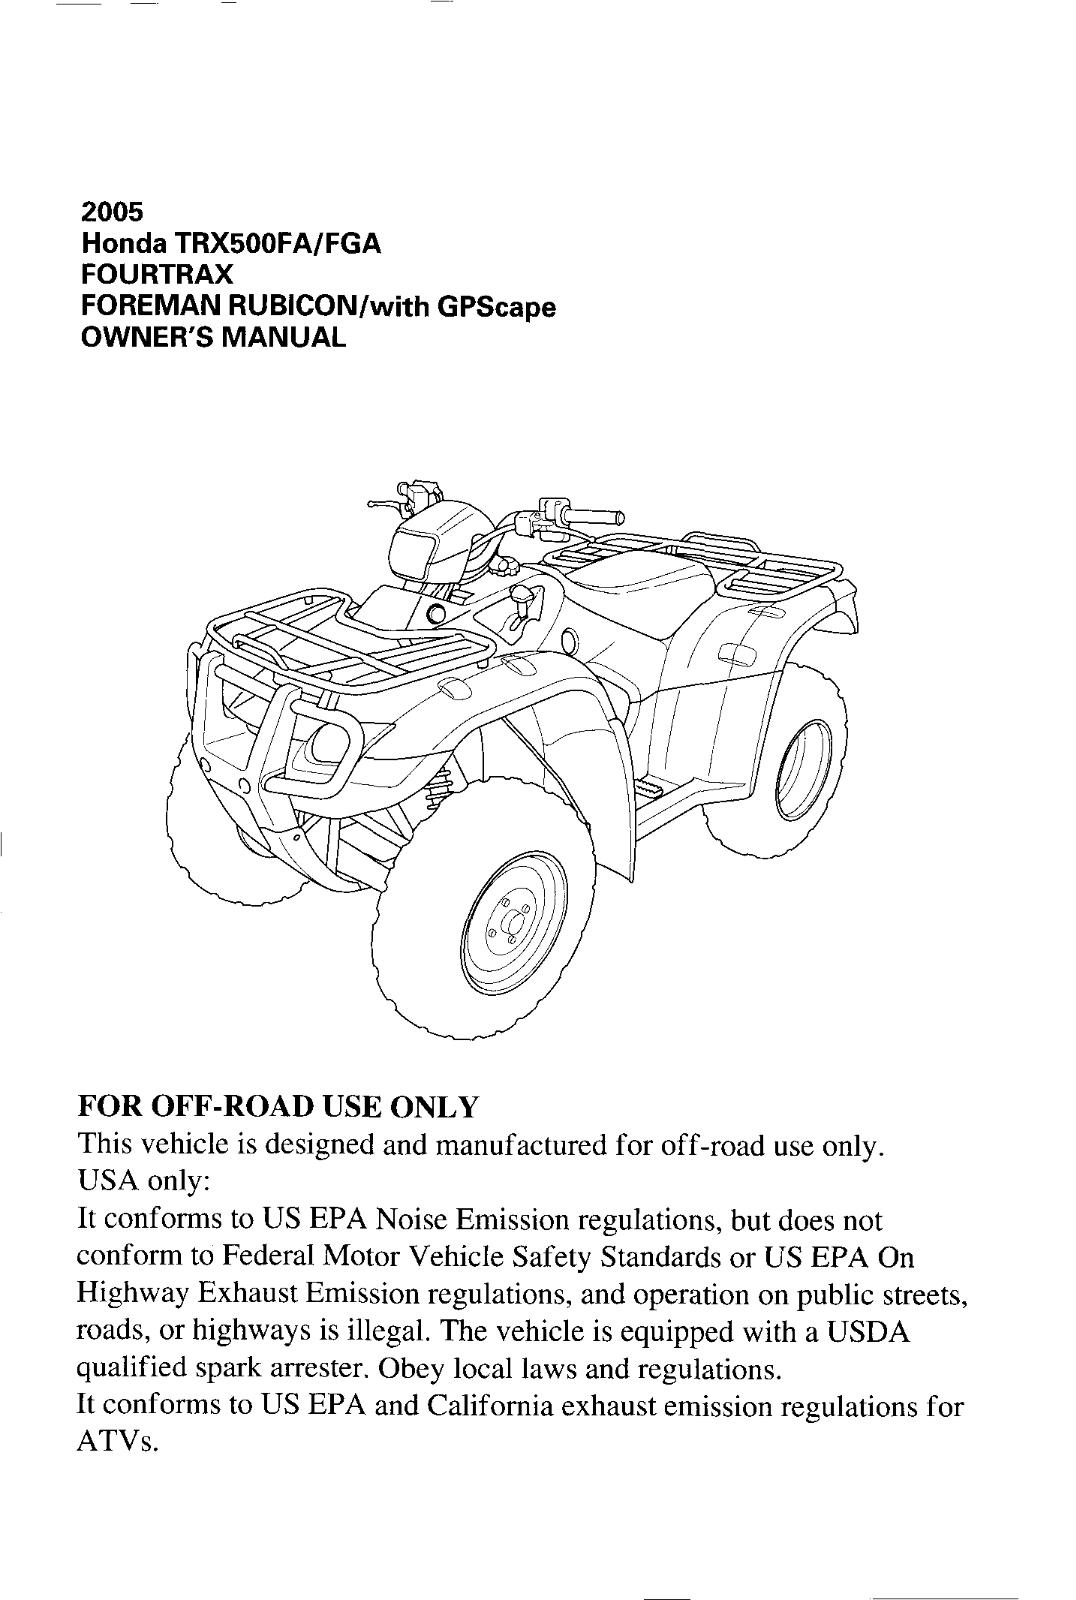 HONDA TRX500FA/FGA 2005 User Manual